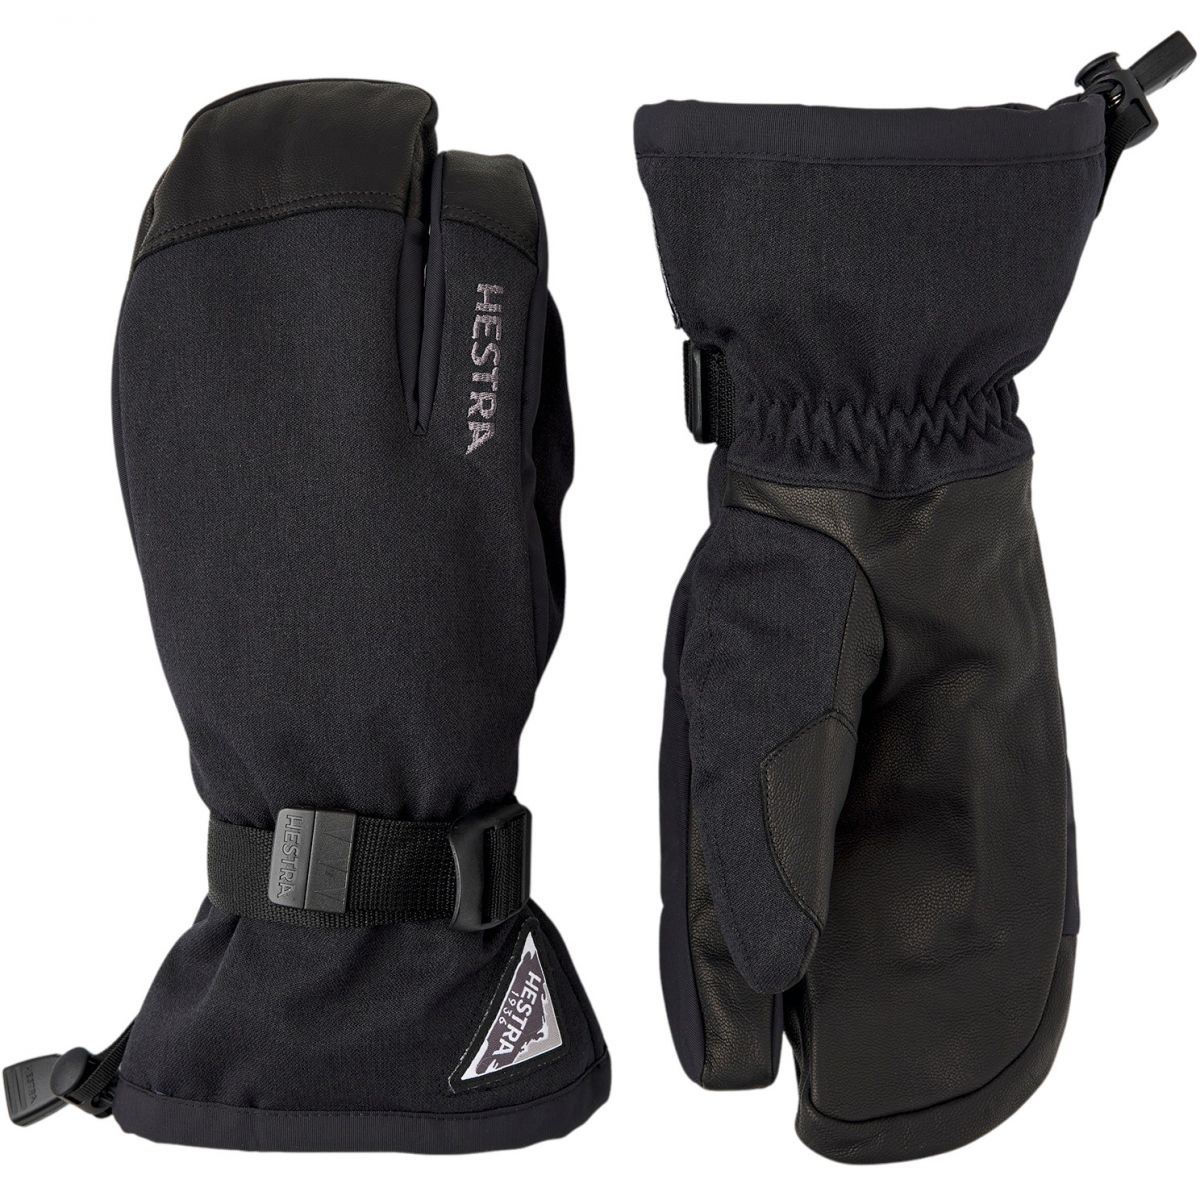 Hestra Powder Gauntlet, 3-finger ski gloves, black